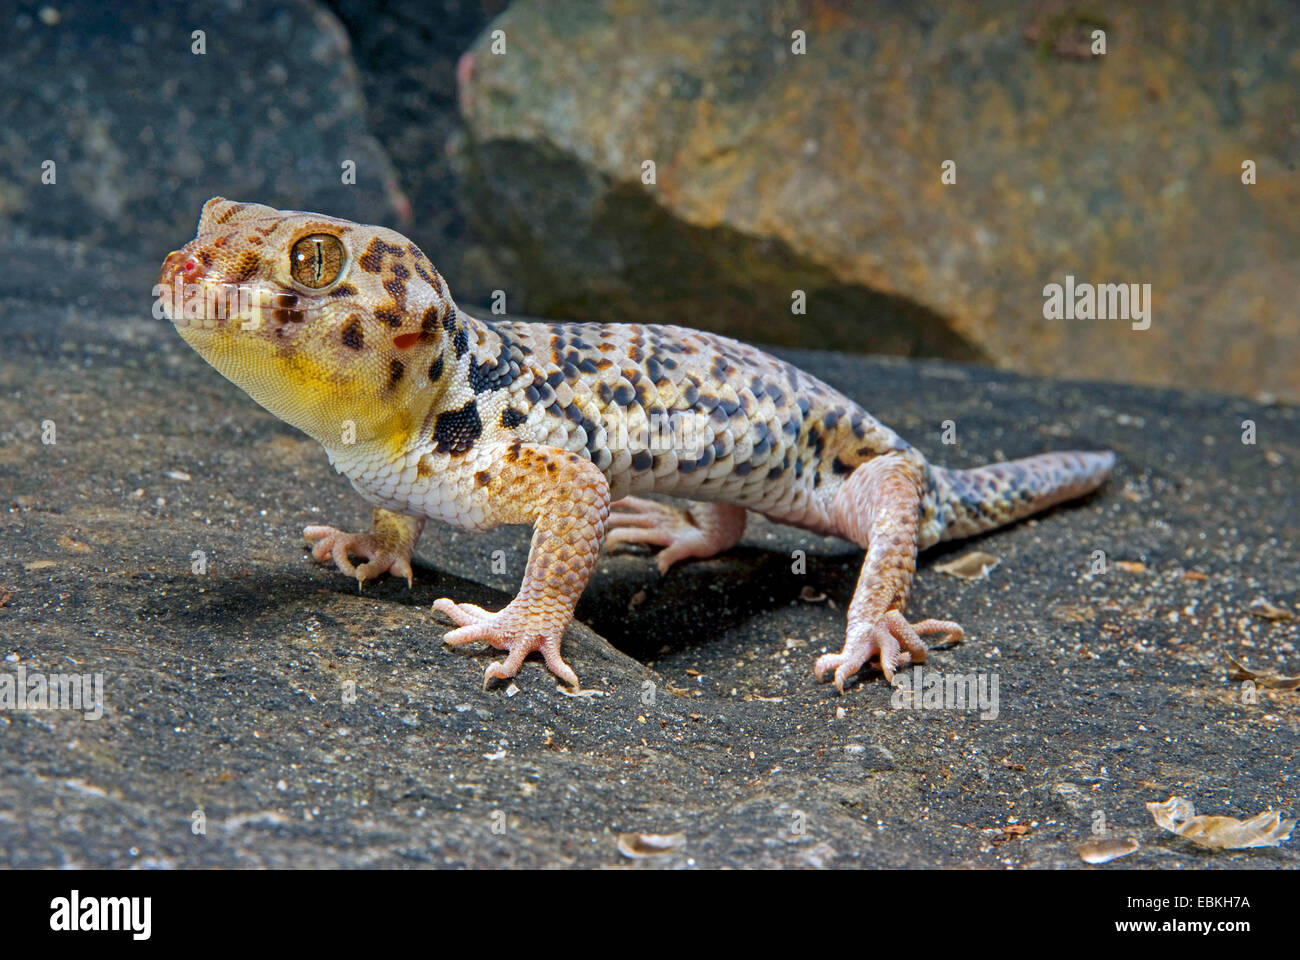 Roborowski's Frog Eyed Gecko (Teratoscincus roborowski), on a stone Stock Photo